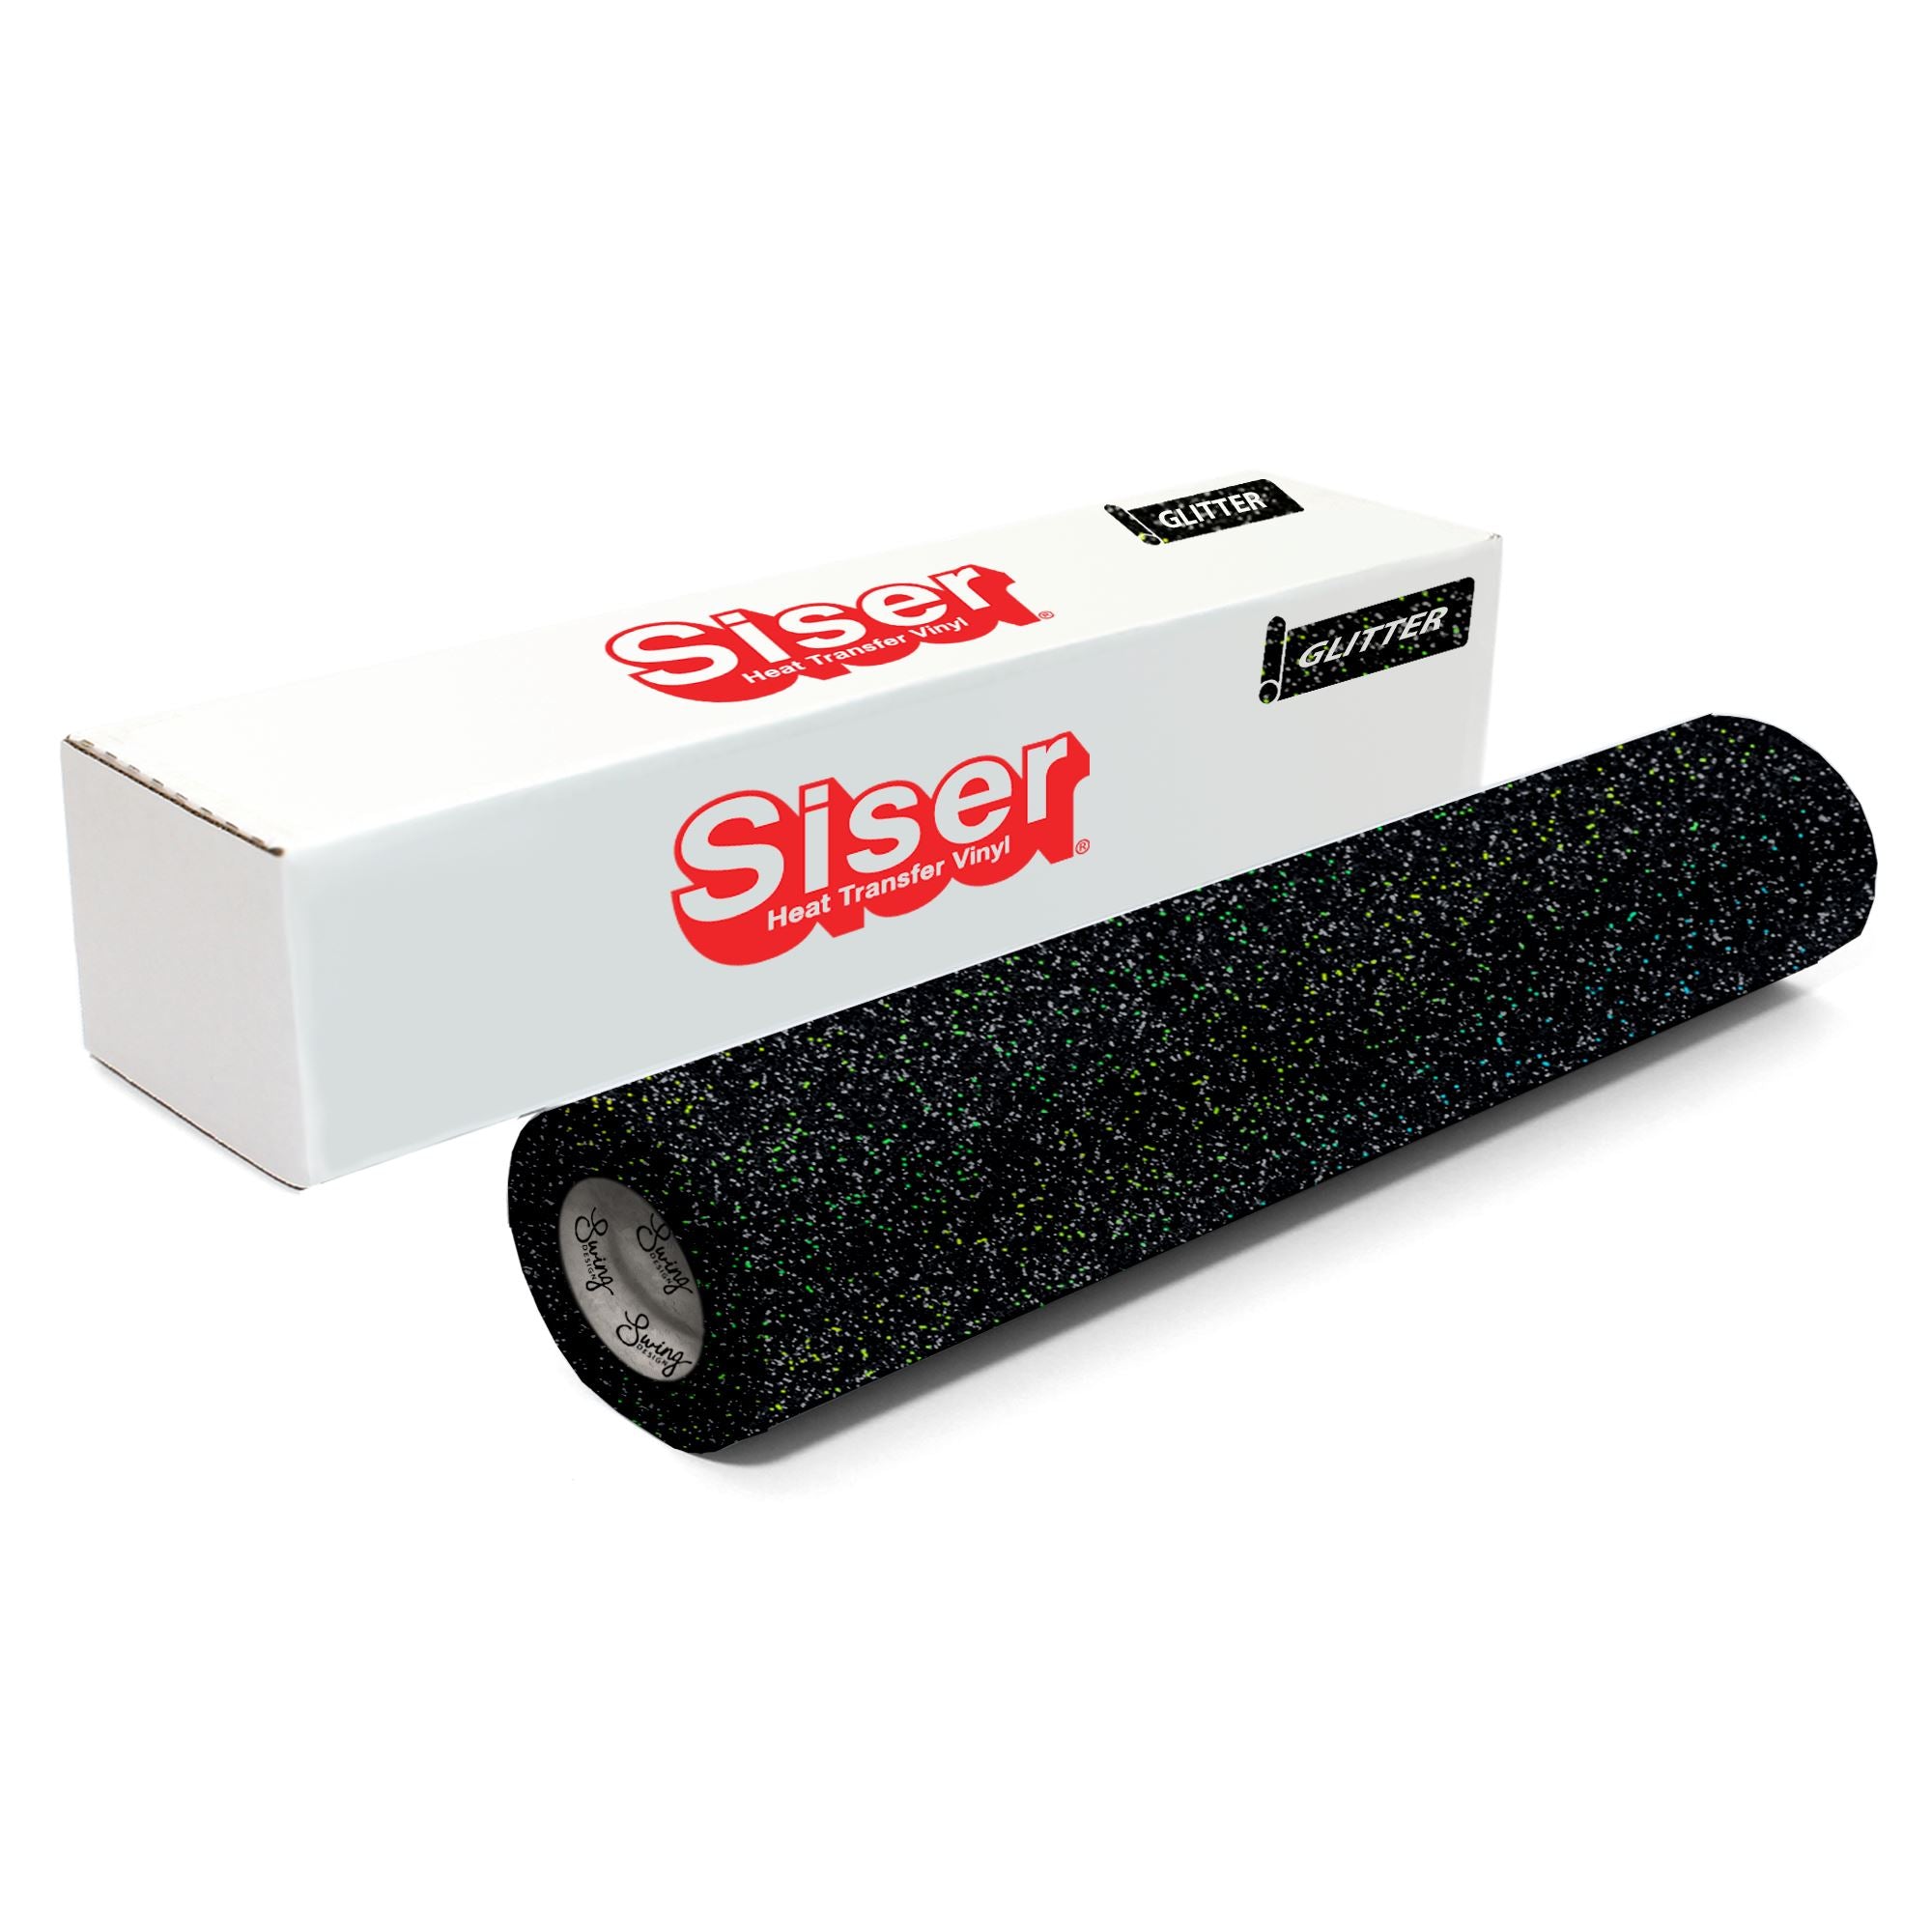 Siser® Glitter Heat Transfer Vinyl Mega Roll in Black, 11.8 x 60